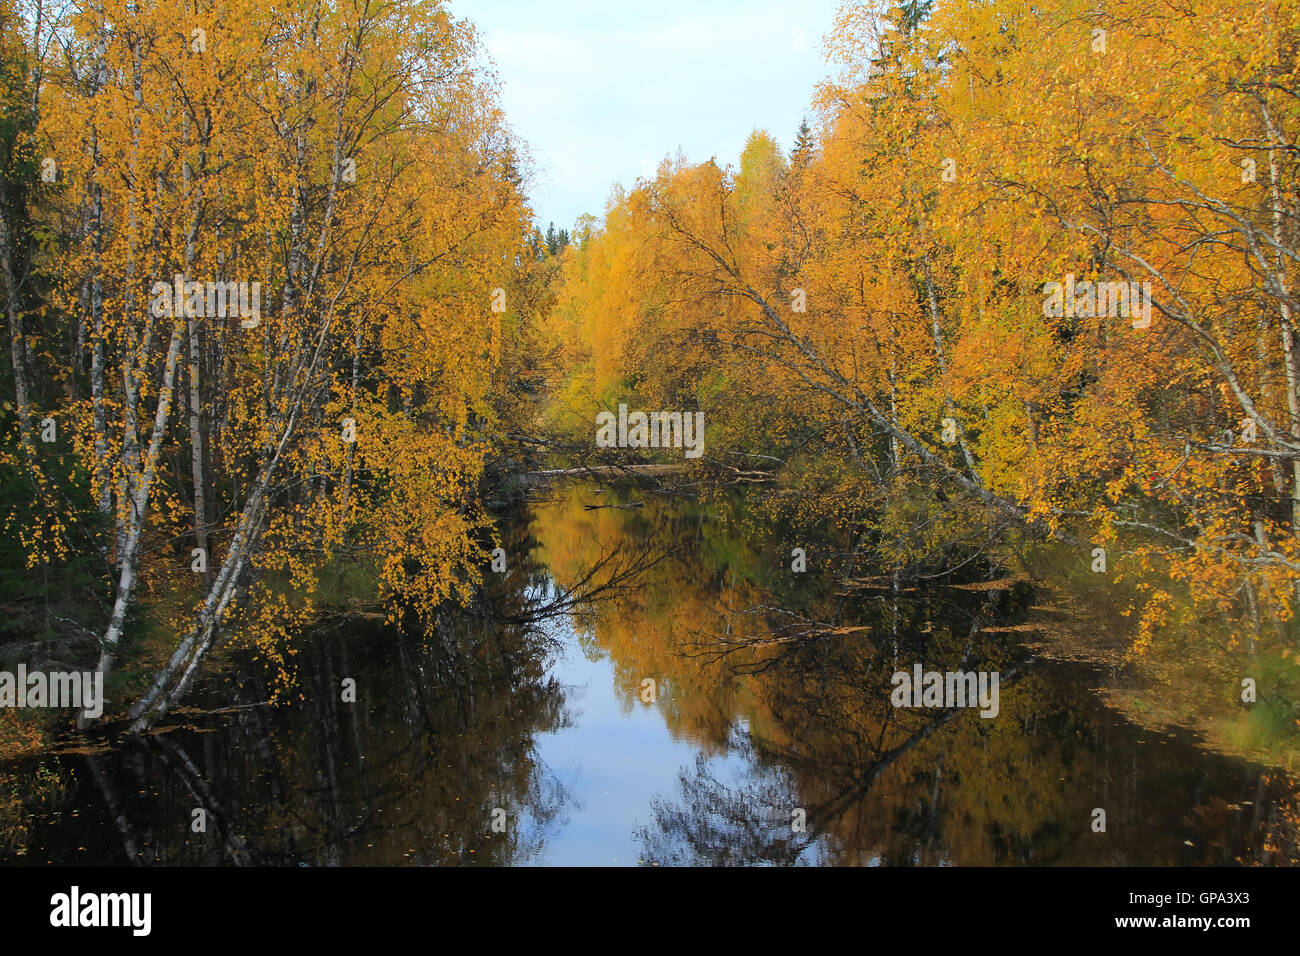 Bergfluss mit Stromschnellen im Herbst Blätter auf dem Wasser schweben. Herbstlichen Wald. Stockfoto